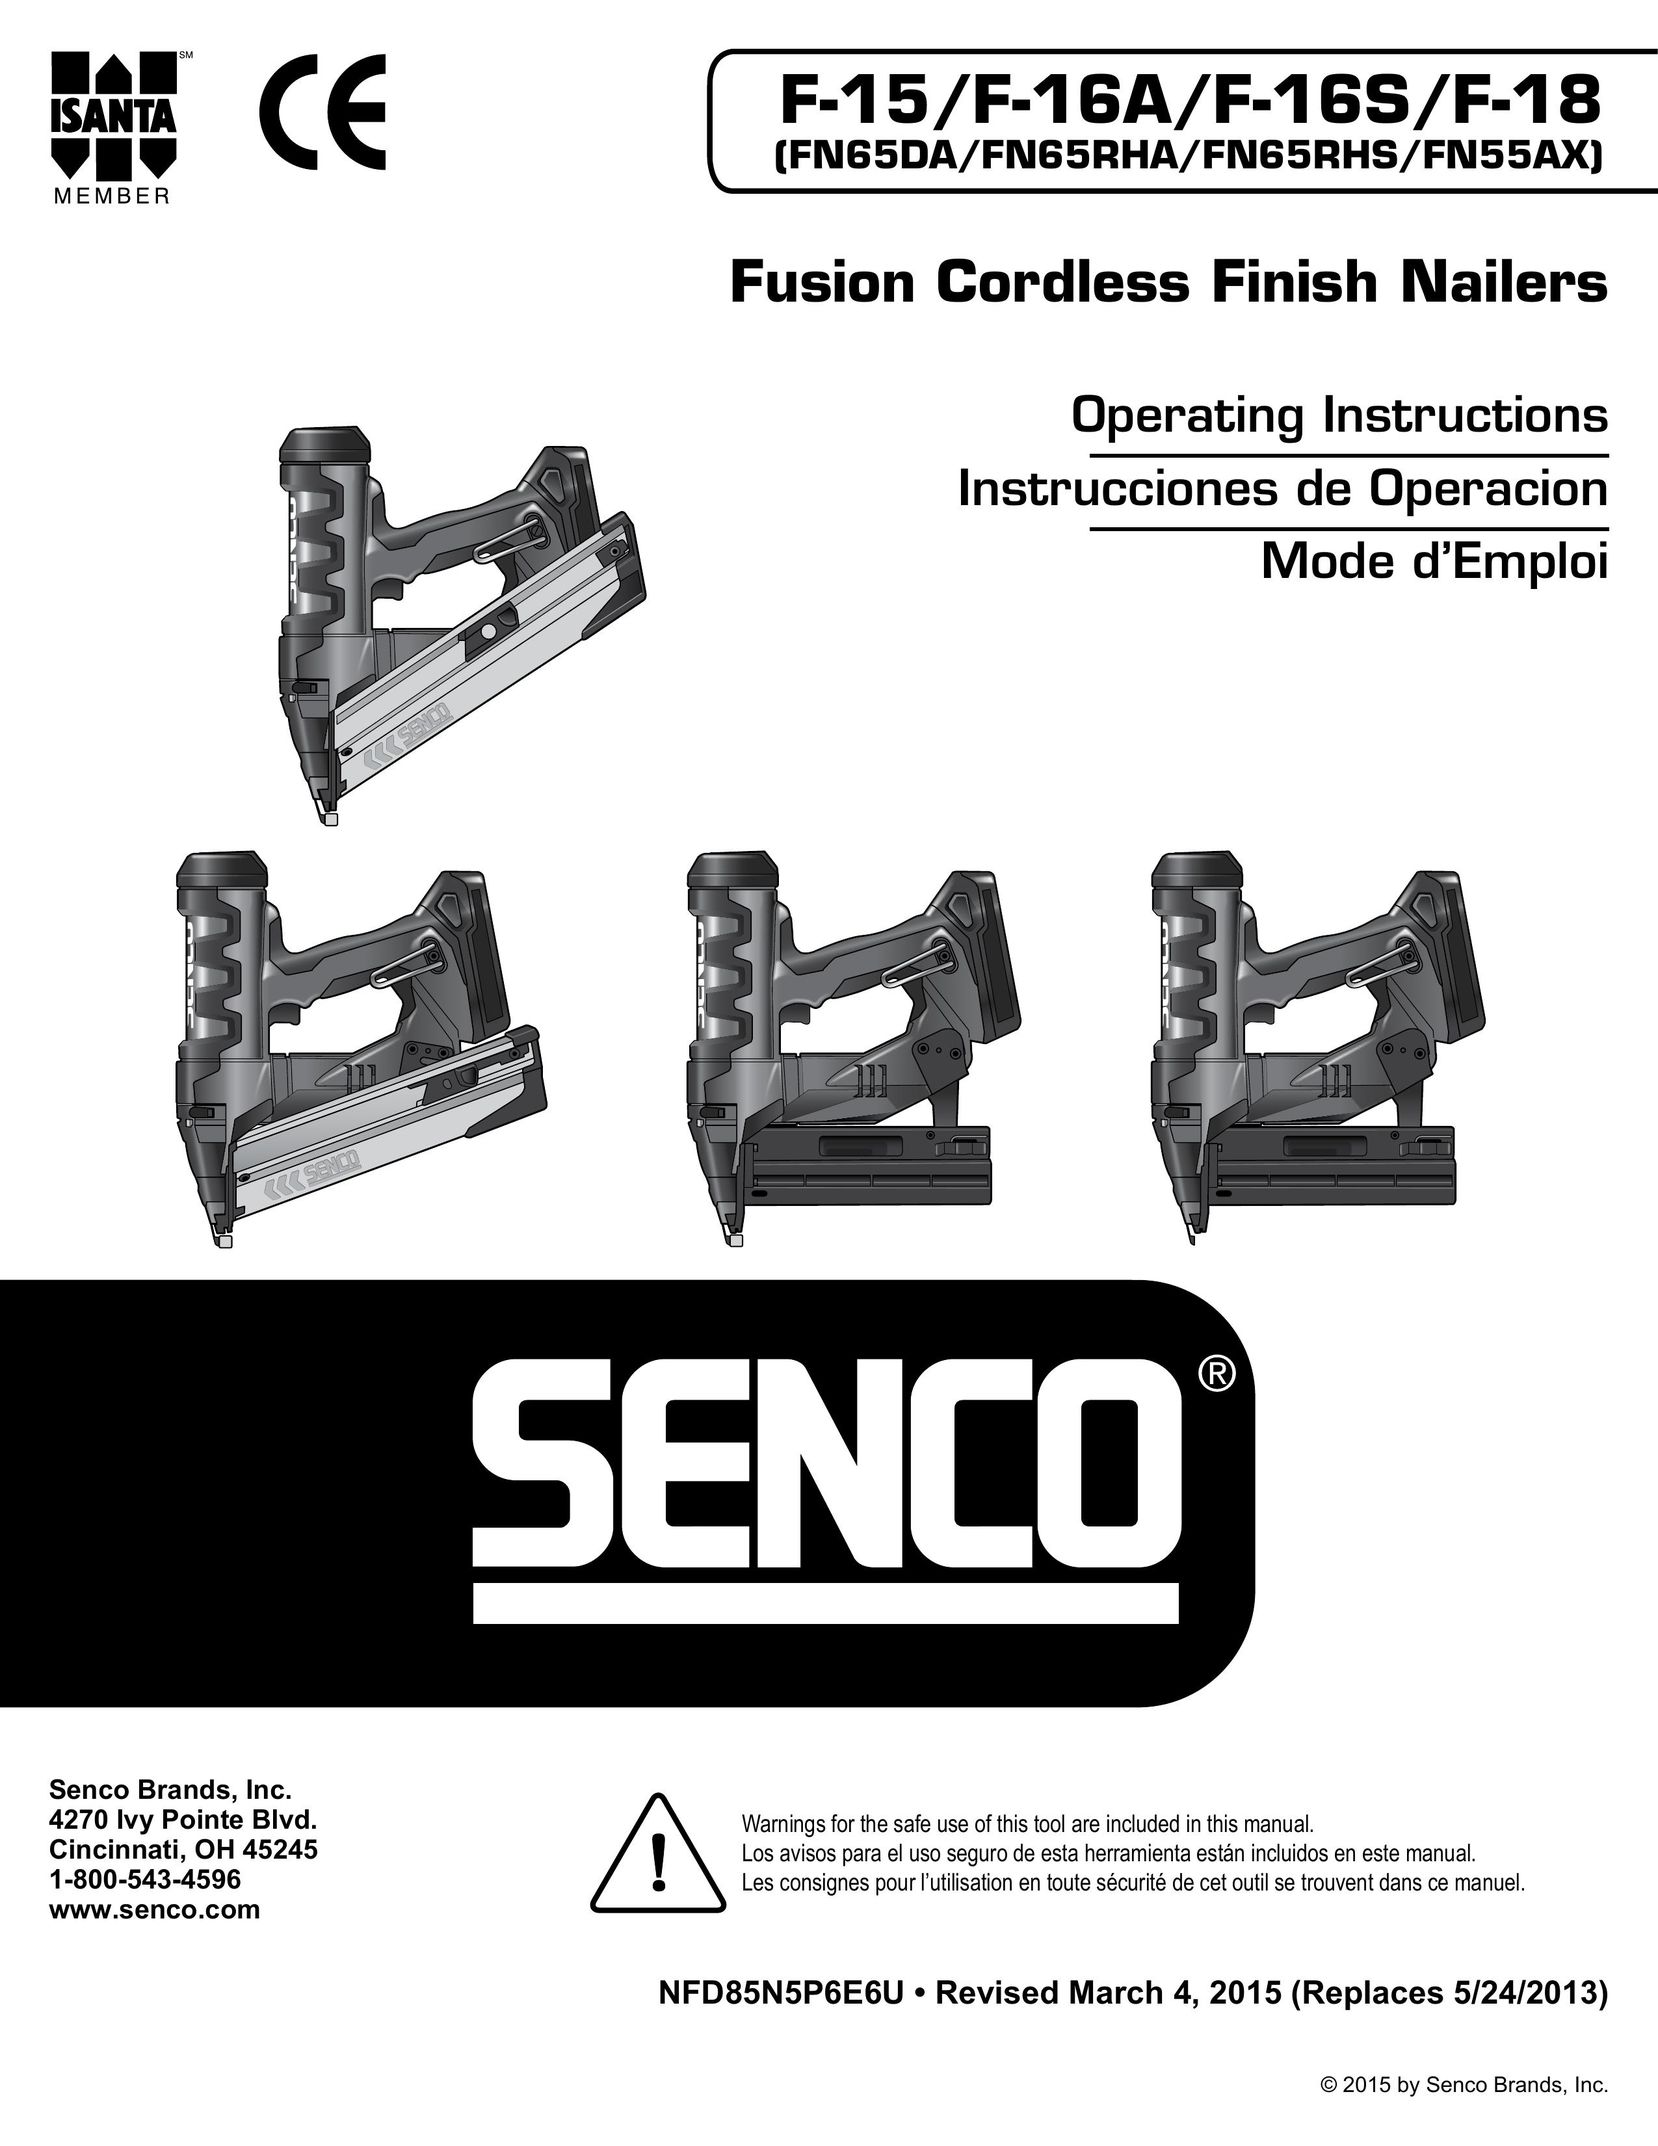 Senco FN65DA Nail Gun User Manual